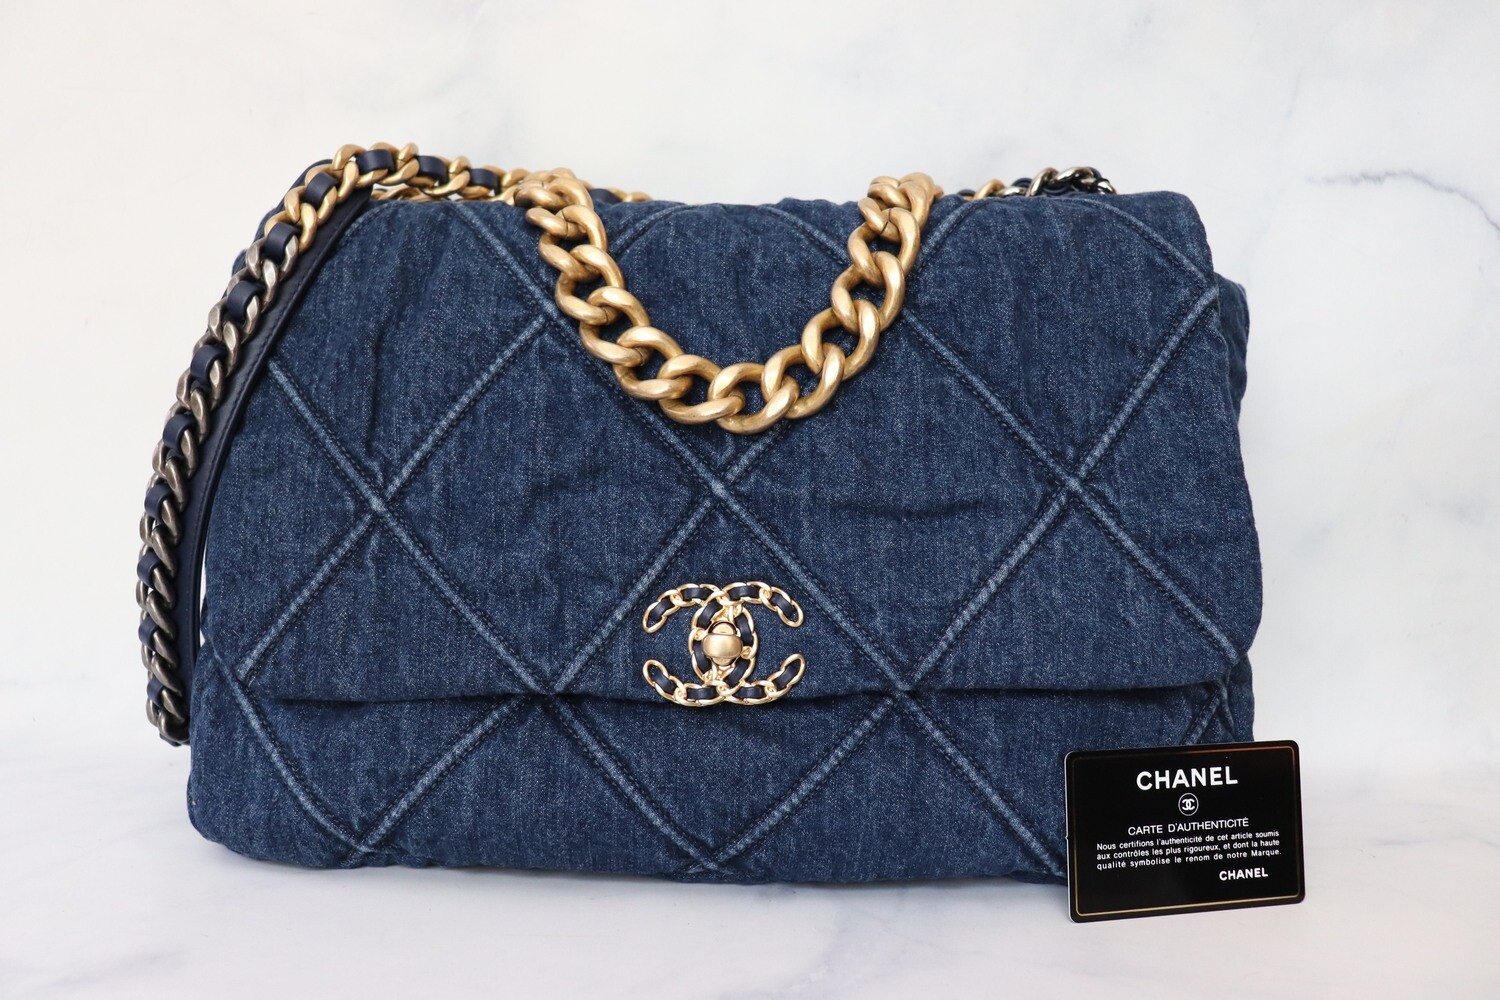 Chanel 19 Maxi Denim, New in Dustbag WA001 - Julia Rose Boston